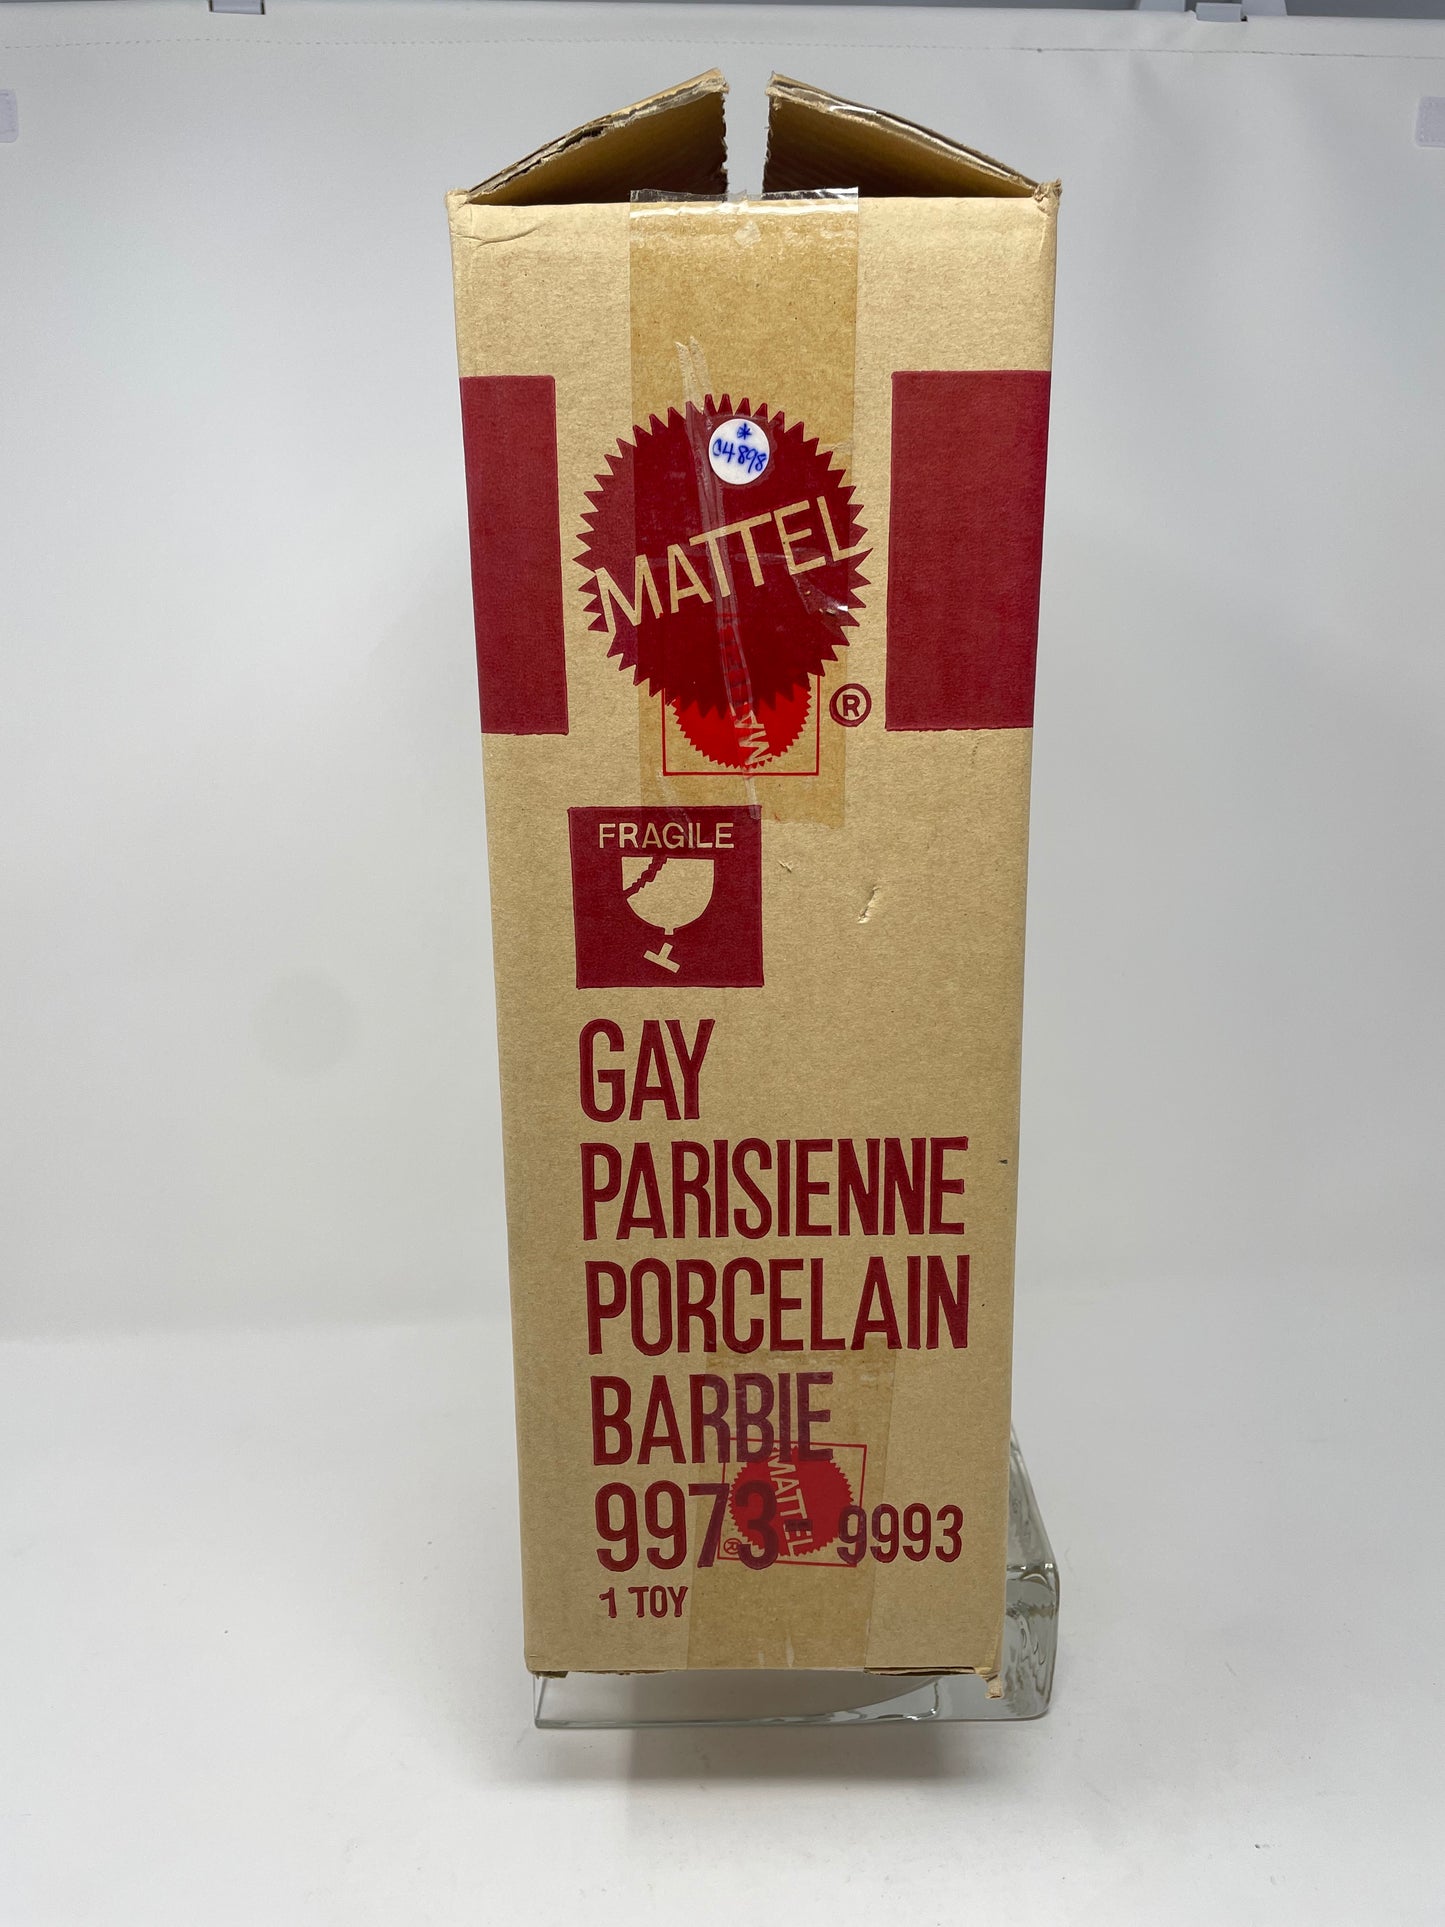 GAY PARISIENNE PORCELAIN BARBIE - #9973 - MATTEL 1991